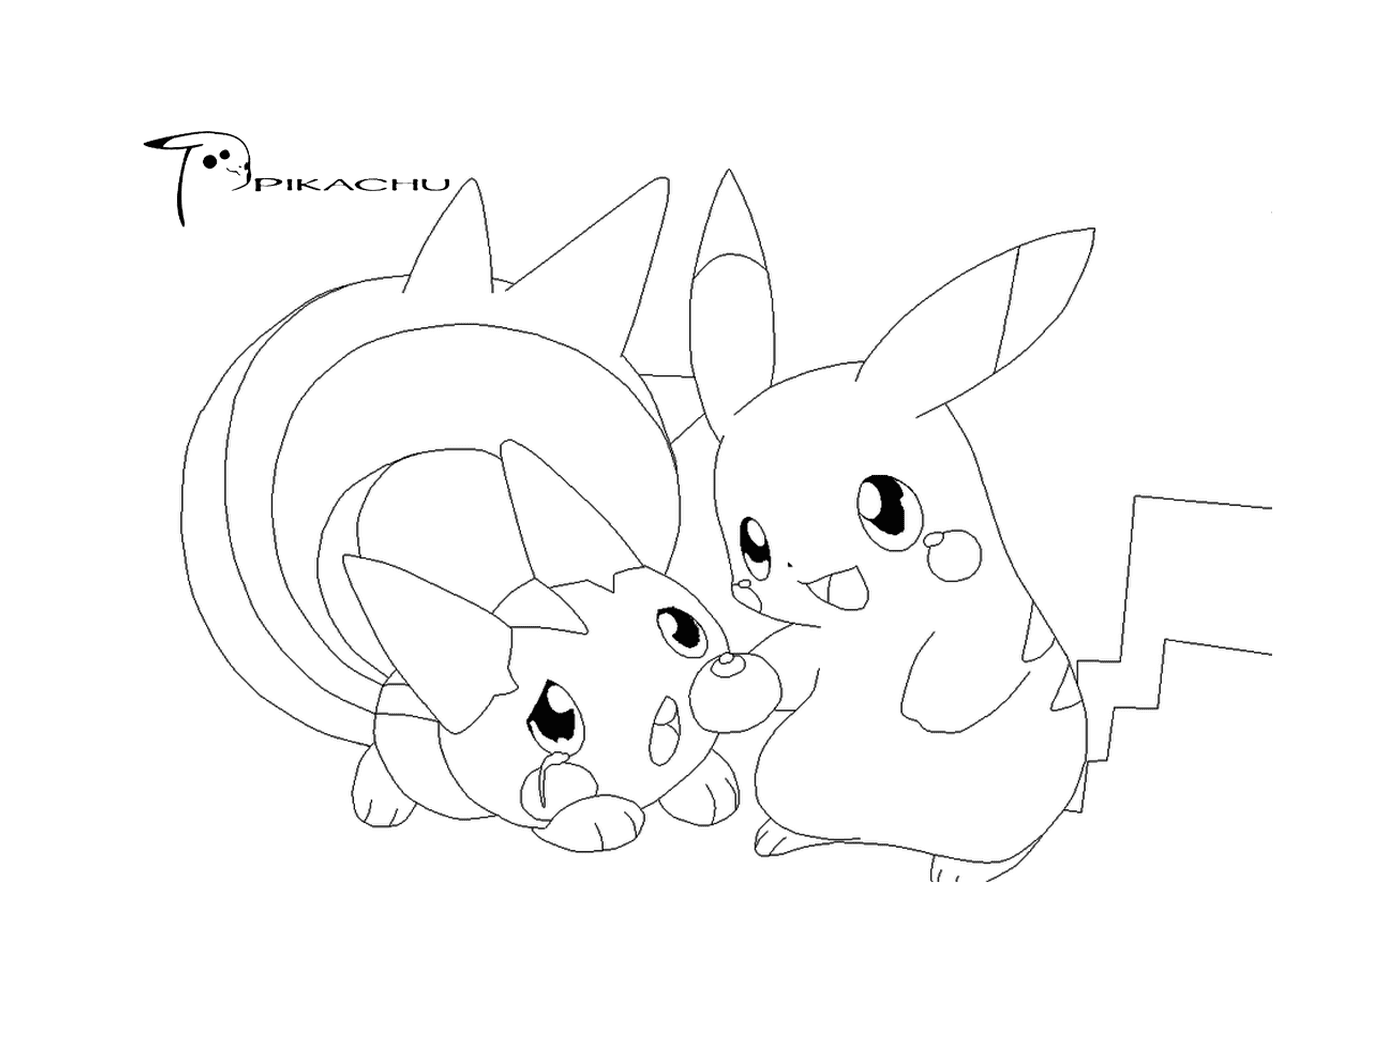  Dois Pikachus juntos 